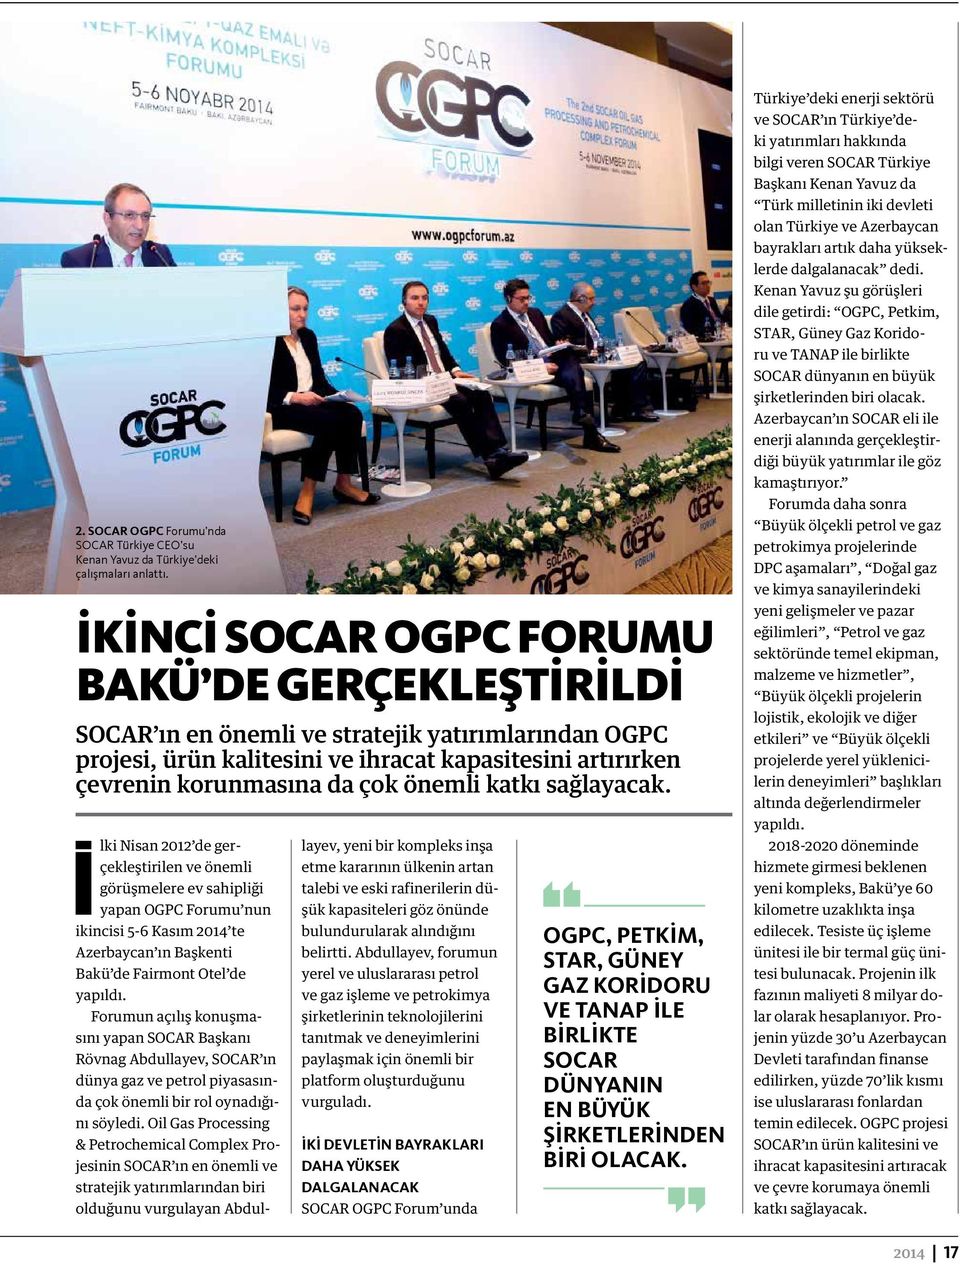 katkı sağlayacak. Ilki Nisan 2012 de gerçekleştirilen ve önemli görüşmelere ev sahipliği yapan OGPC Forumu nun ikincisi 5-6 Kasım 2014 te Azerbaycan ın Başkenti Bakü de Fairmont Otel de yapıldı.